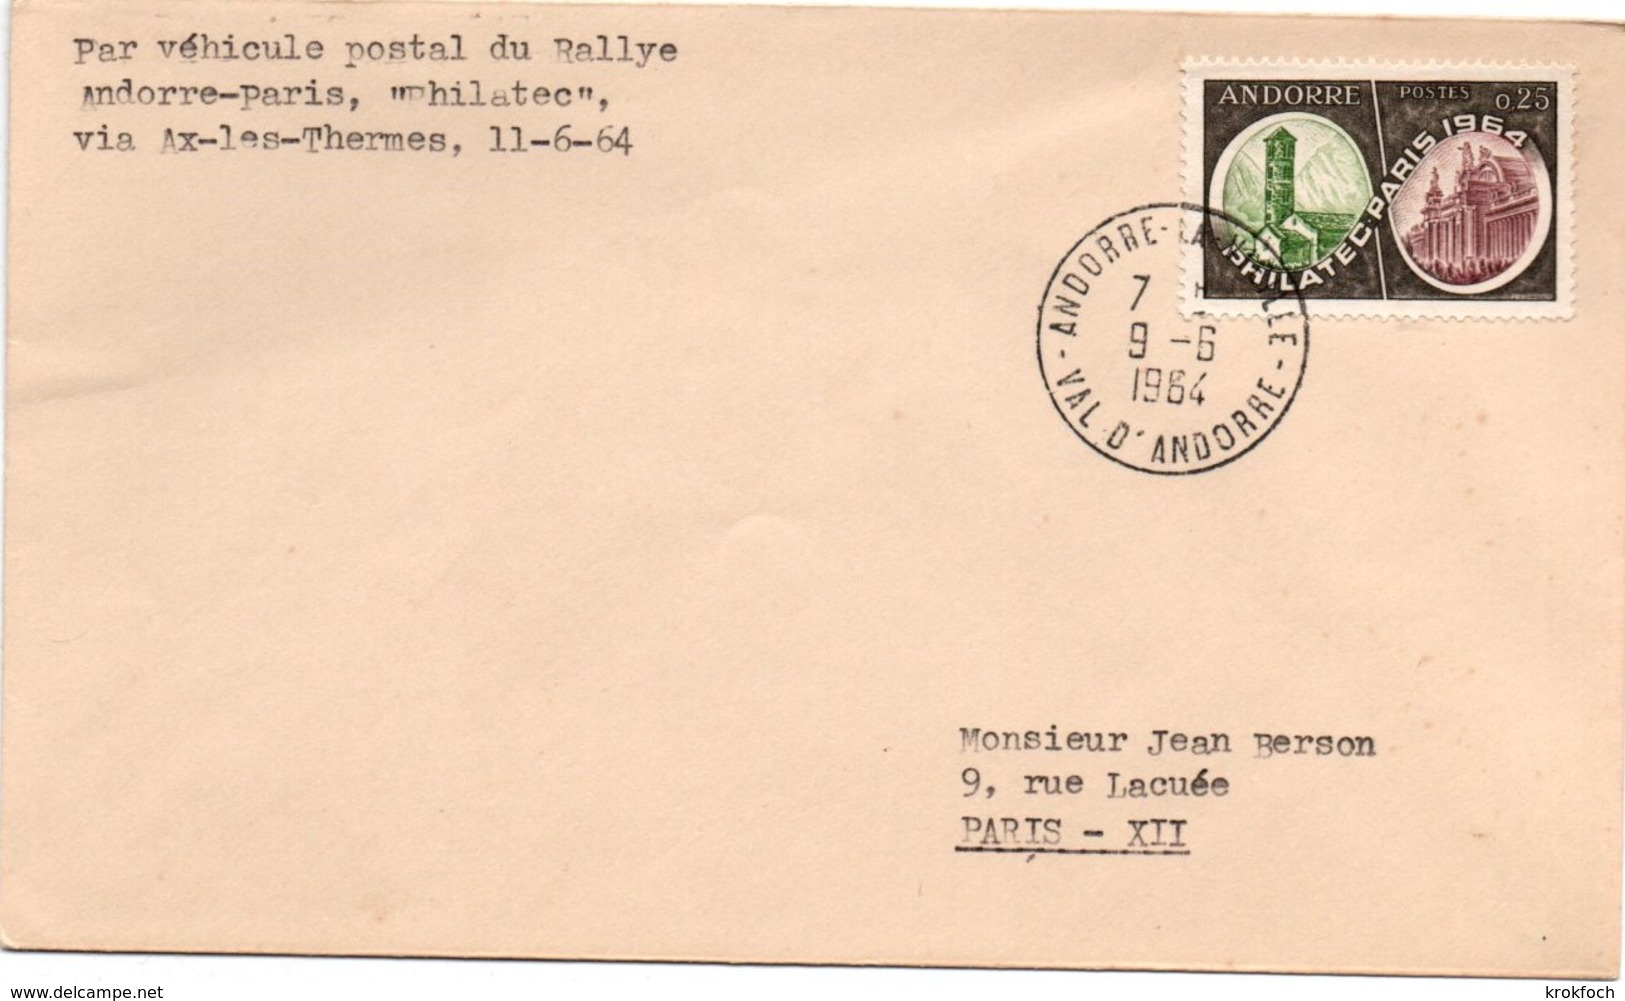 Andorre 1964 - Lettre Par Véhicule Postal Du Rallye Philatec Via Ax-les-Thermes - Covers & Documents